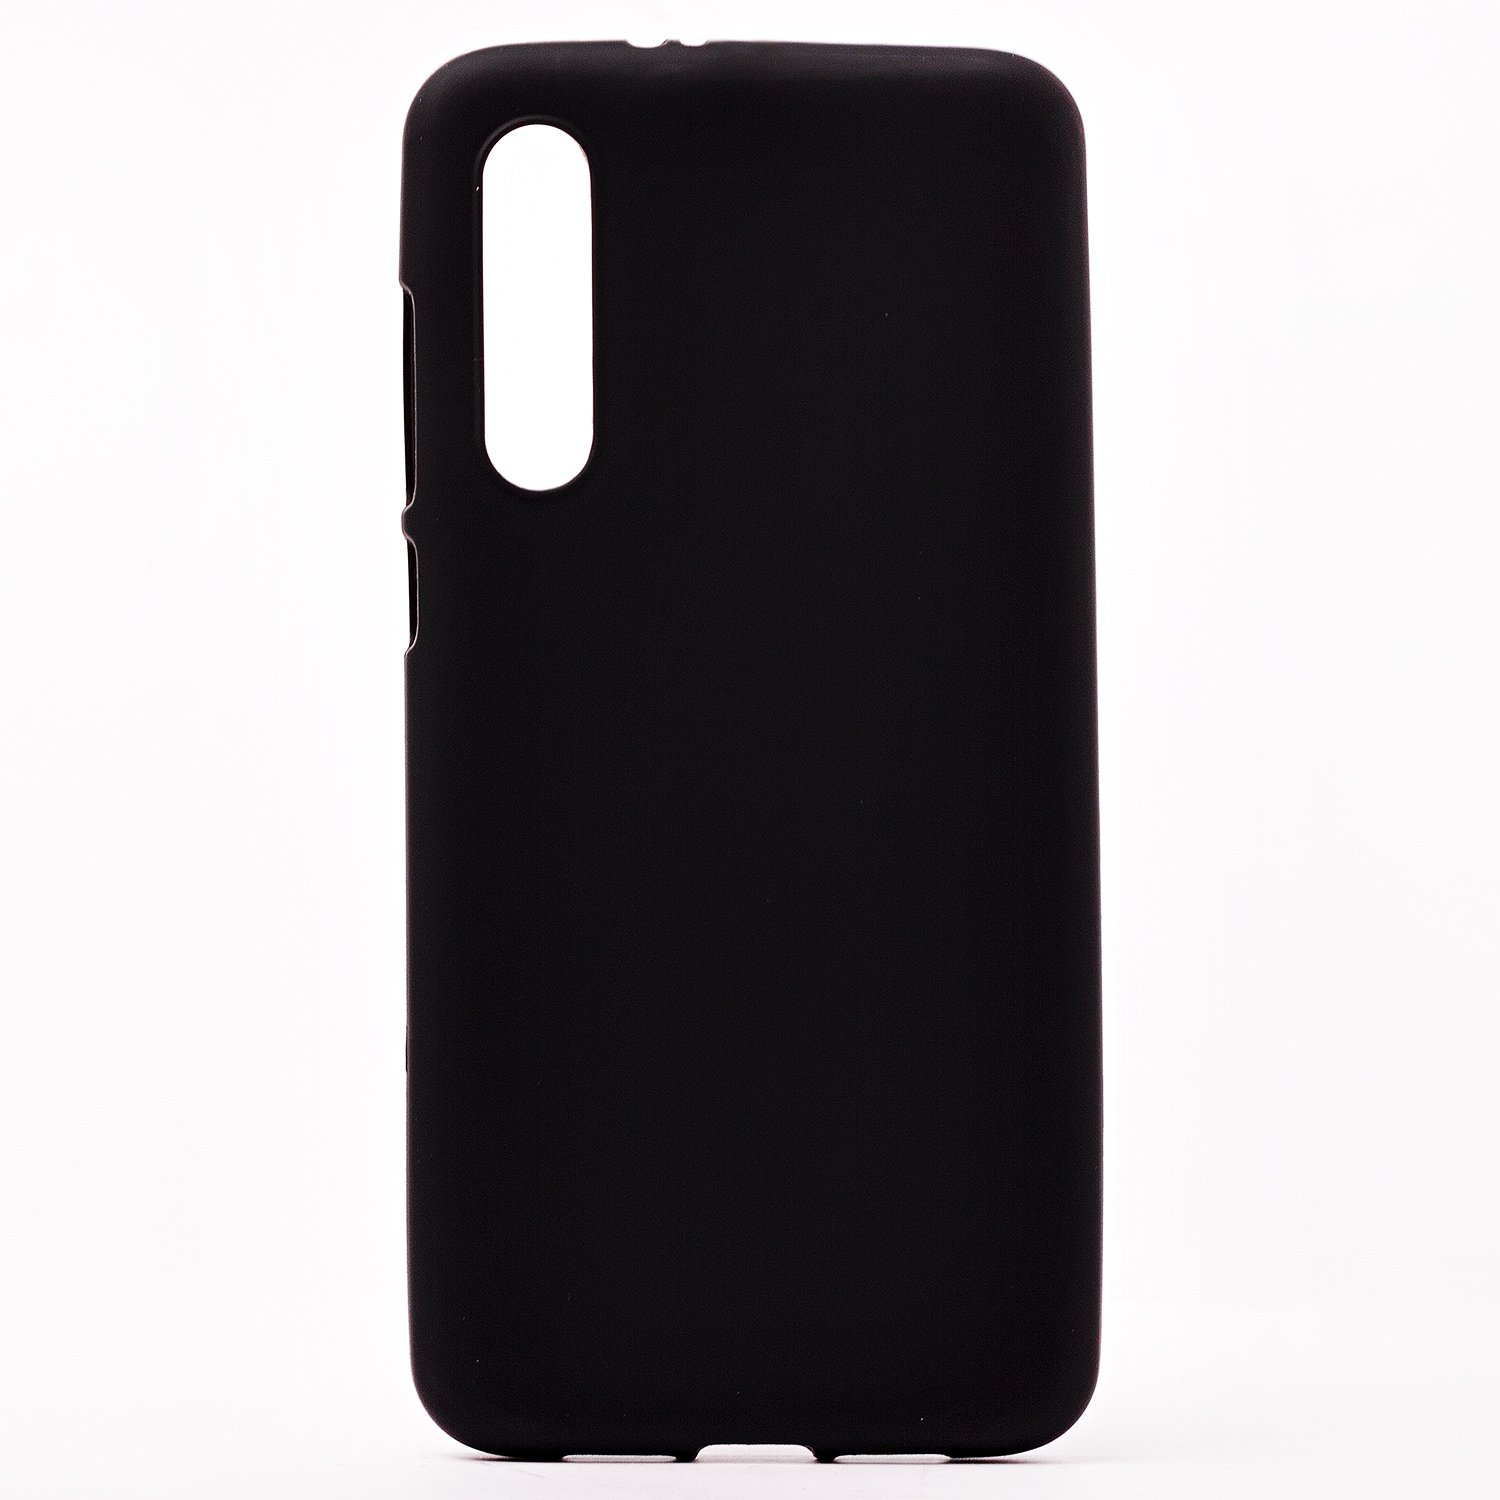 Чехол-накладка Activ Mate для смартфона Xiaomi Mi 9 Pro, силикон, черный (101922)